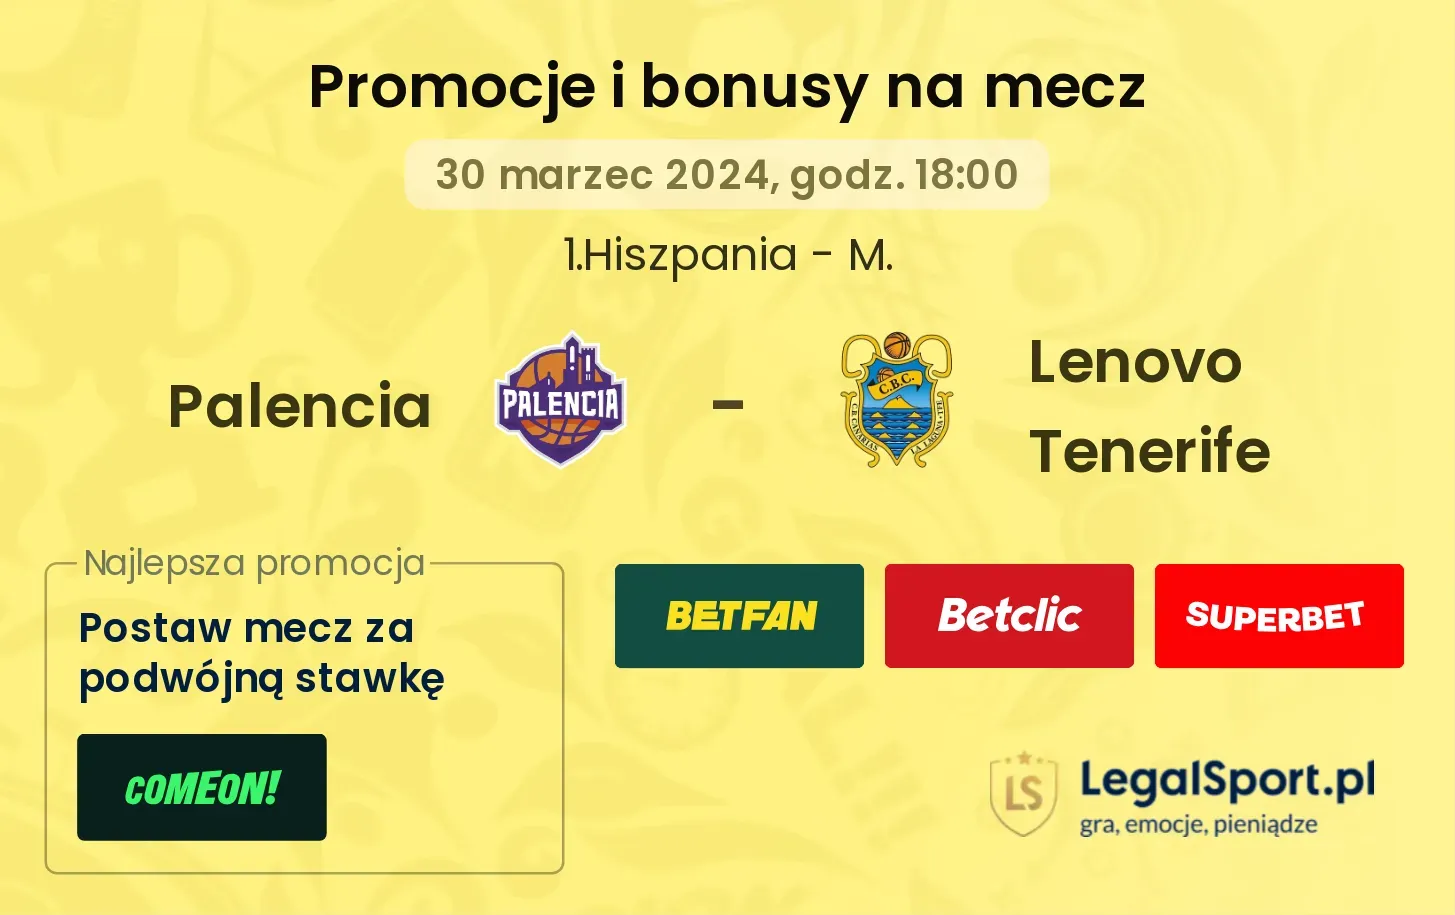 Palencia - Lenovo Tenerife promocje bonusy na mecz